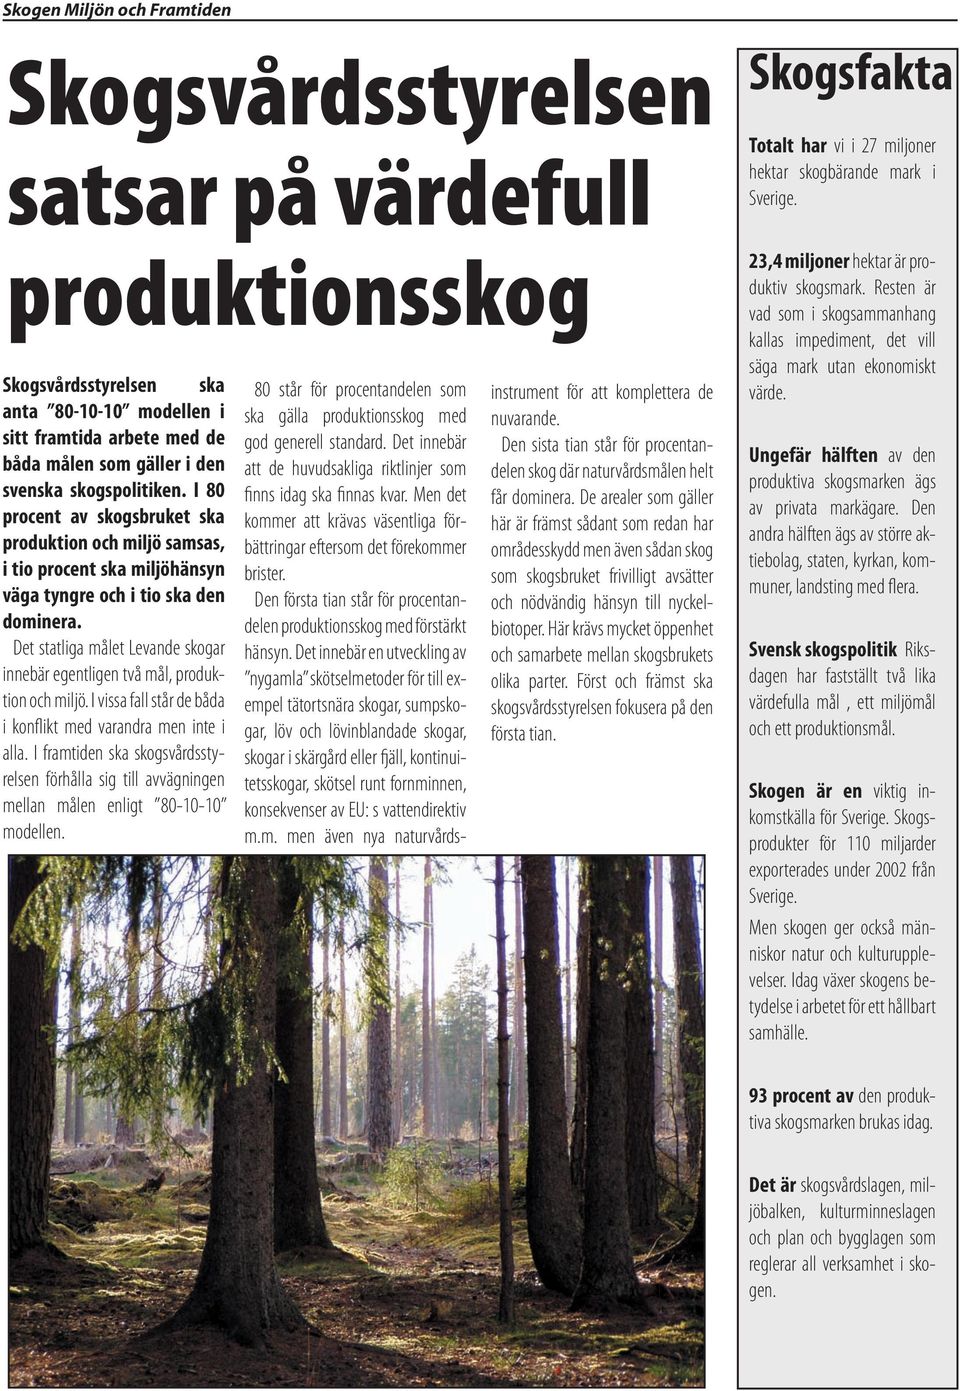 Det statliga målet Levande skogar innebär egentligen två mål, produktion och miljö. I vissa fall står de båda i konflikt med varandra men inte i alla.